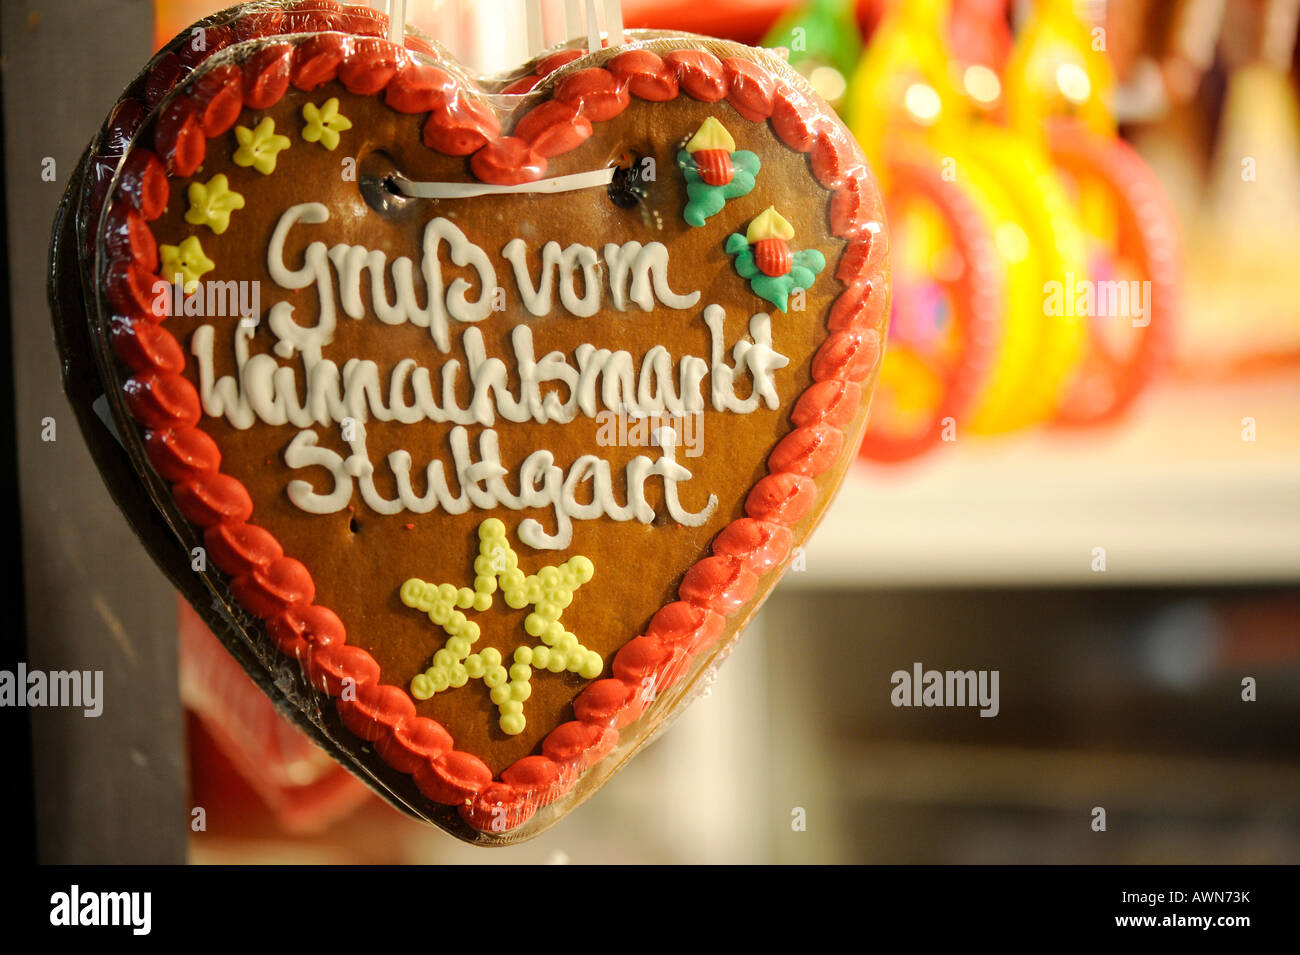 Gingerbread heart, christmas market, Stuttgart, Germany Stock Photo